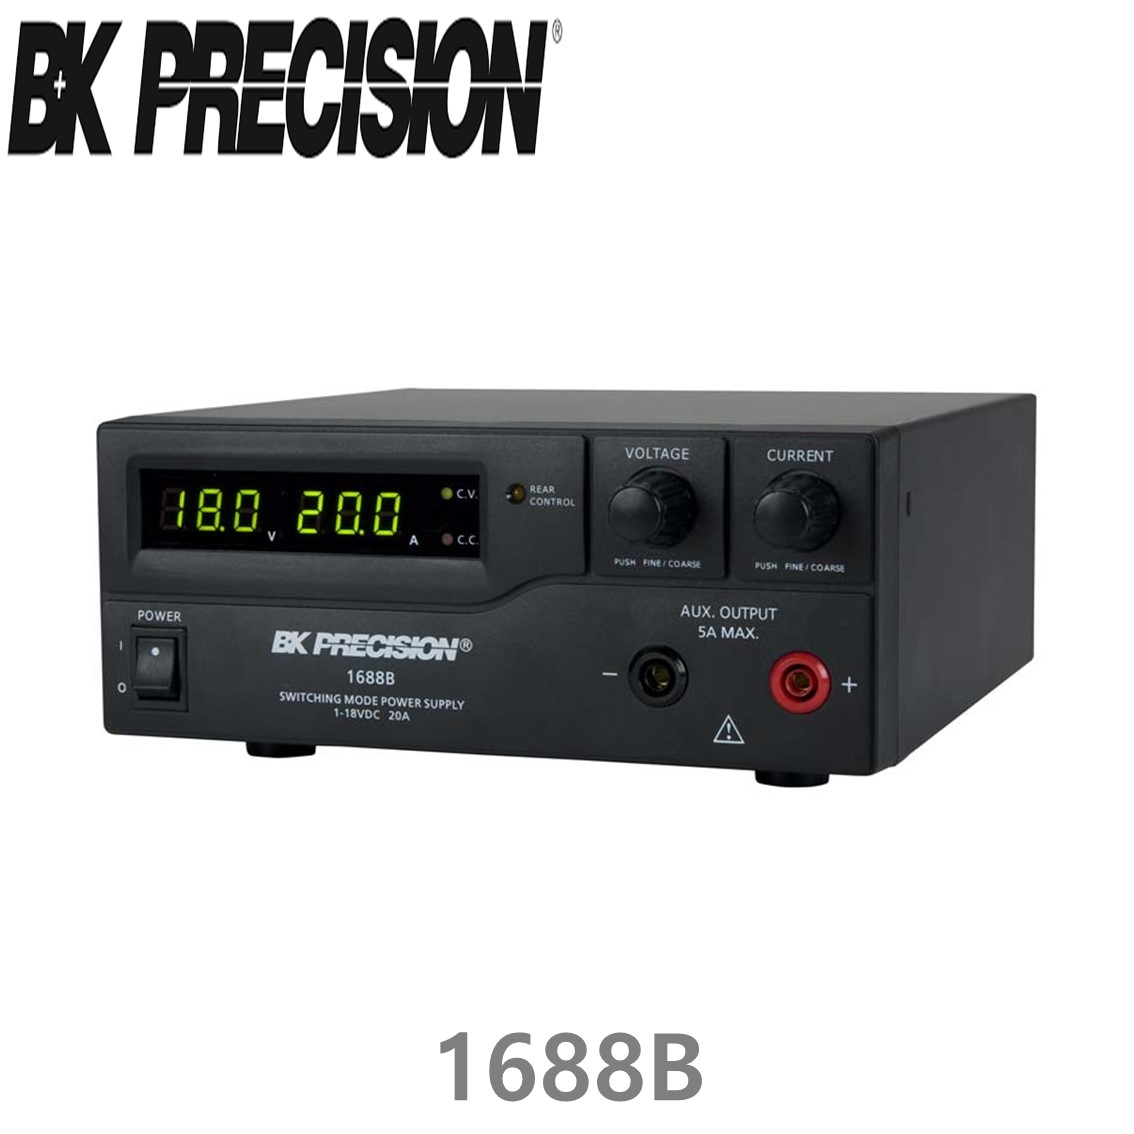 [ BK PRECISION ] BK 1688B, 18V/20A, Switching DC Power Supply, DC 전원공급기, B&K 1688B